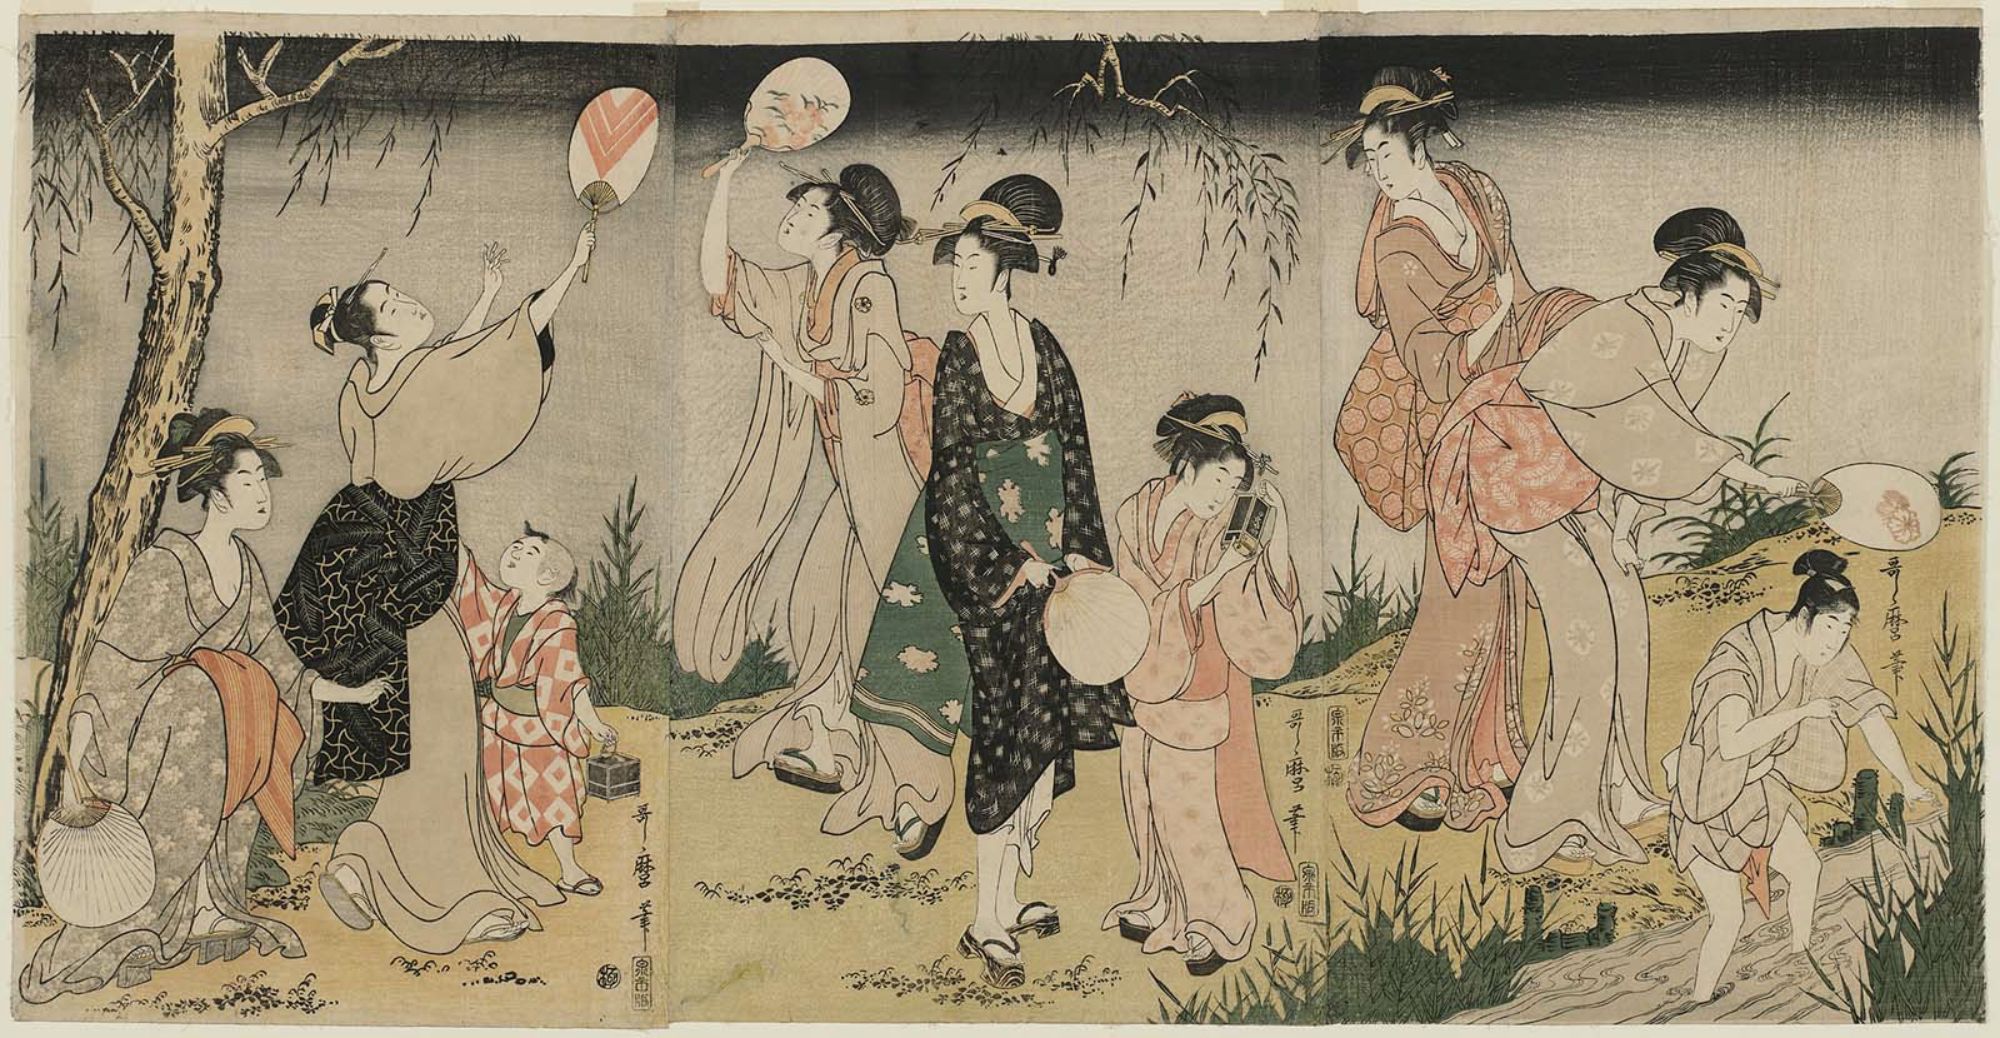 Kitagawa Utamaro (1753-1805)